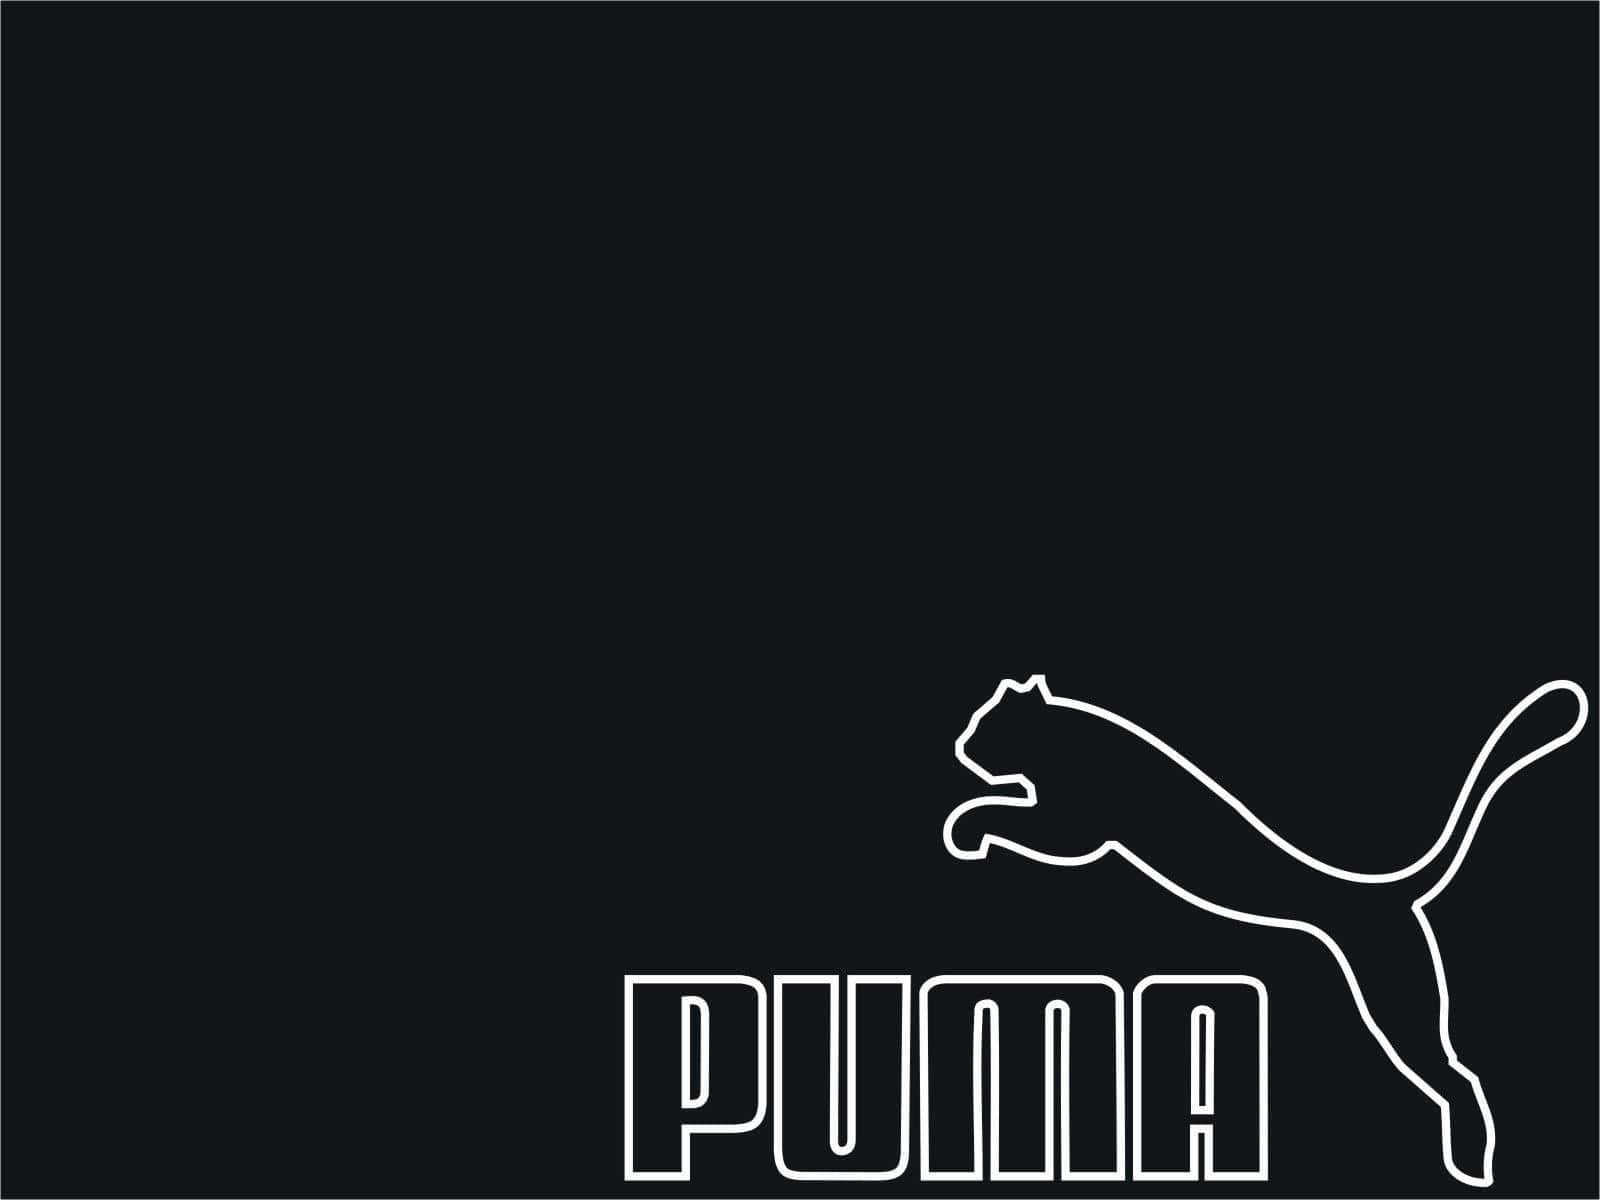 Representing the Spirit of Puma